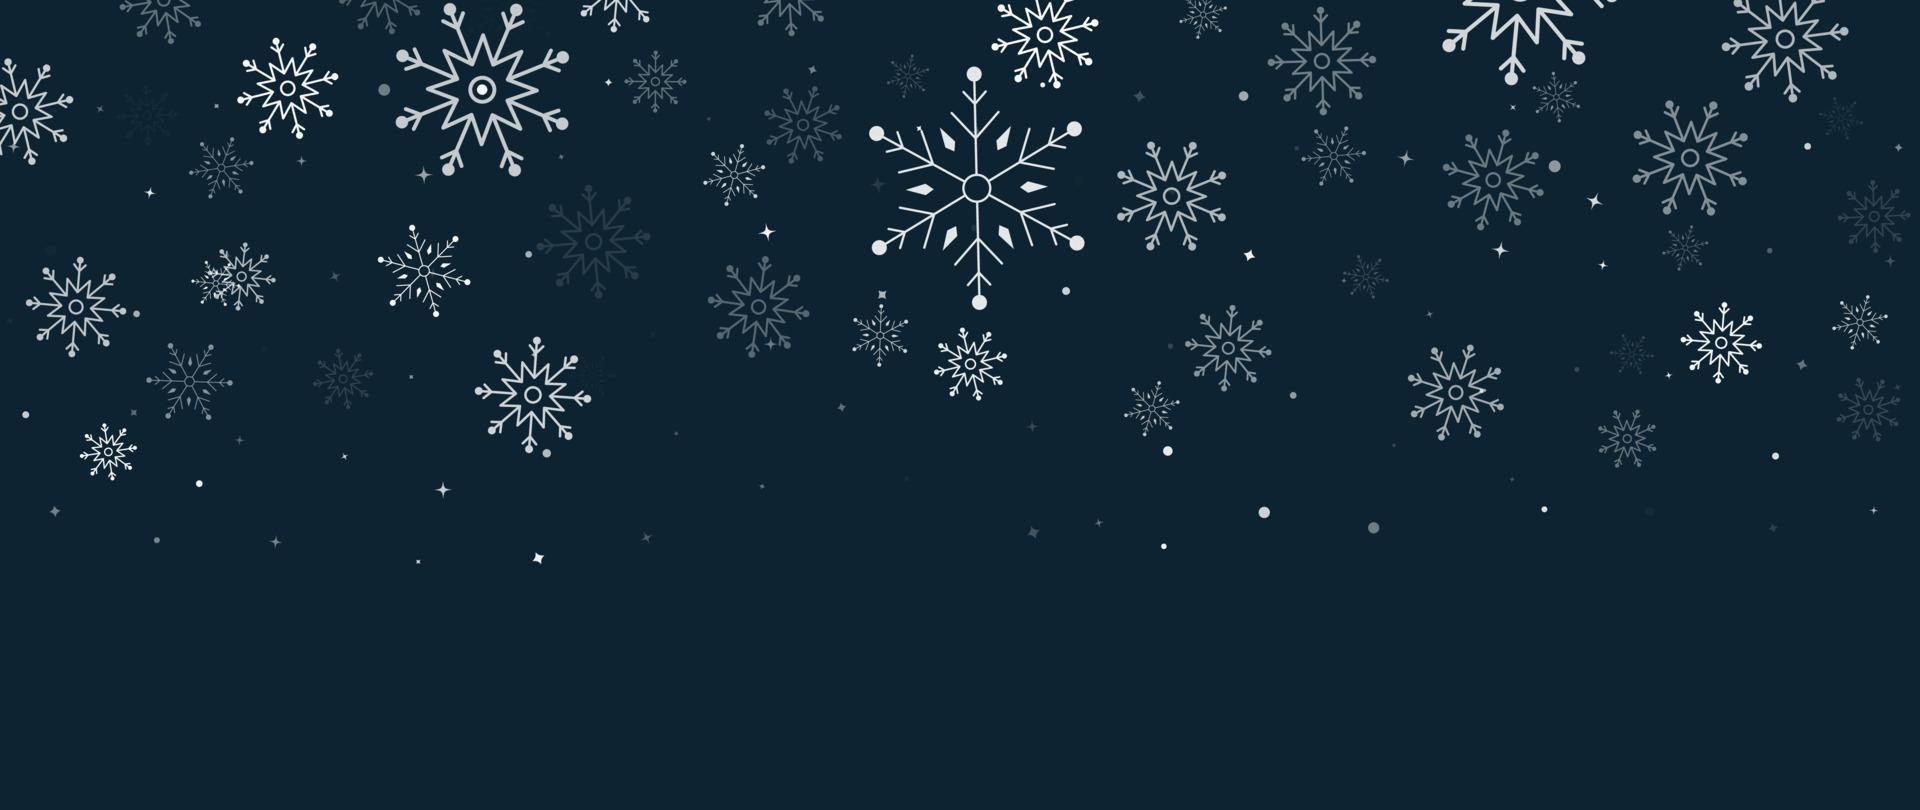 elegante Winterschneeflockehintergrund-Vektorillustration. luxuriöse dekorative schneeflocke und funkeln auf dunkelblauem hintergrund. Design geeignet für Einladungskarte, Gruß, Tapete, Poster, Banner. vektor